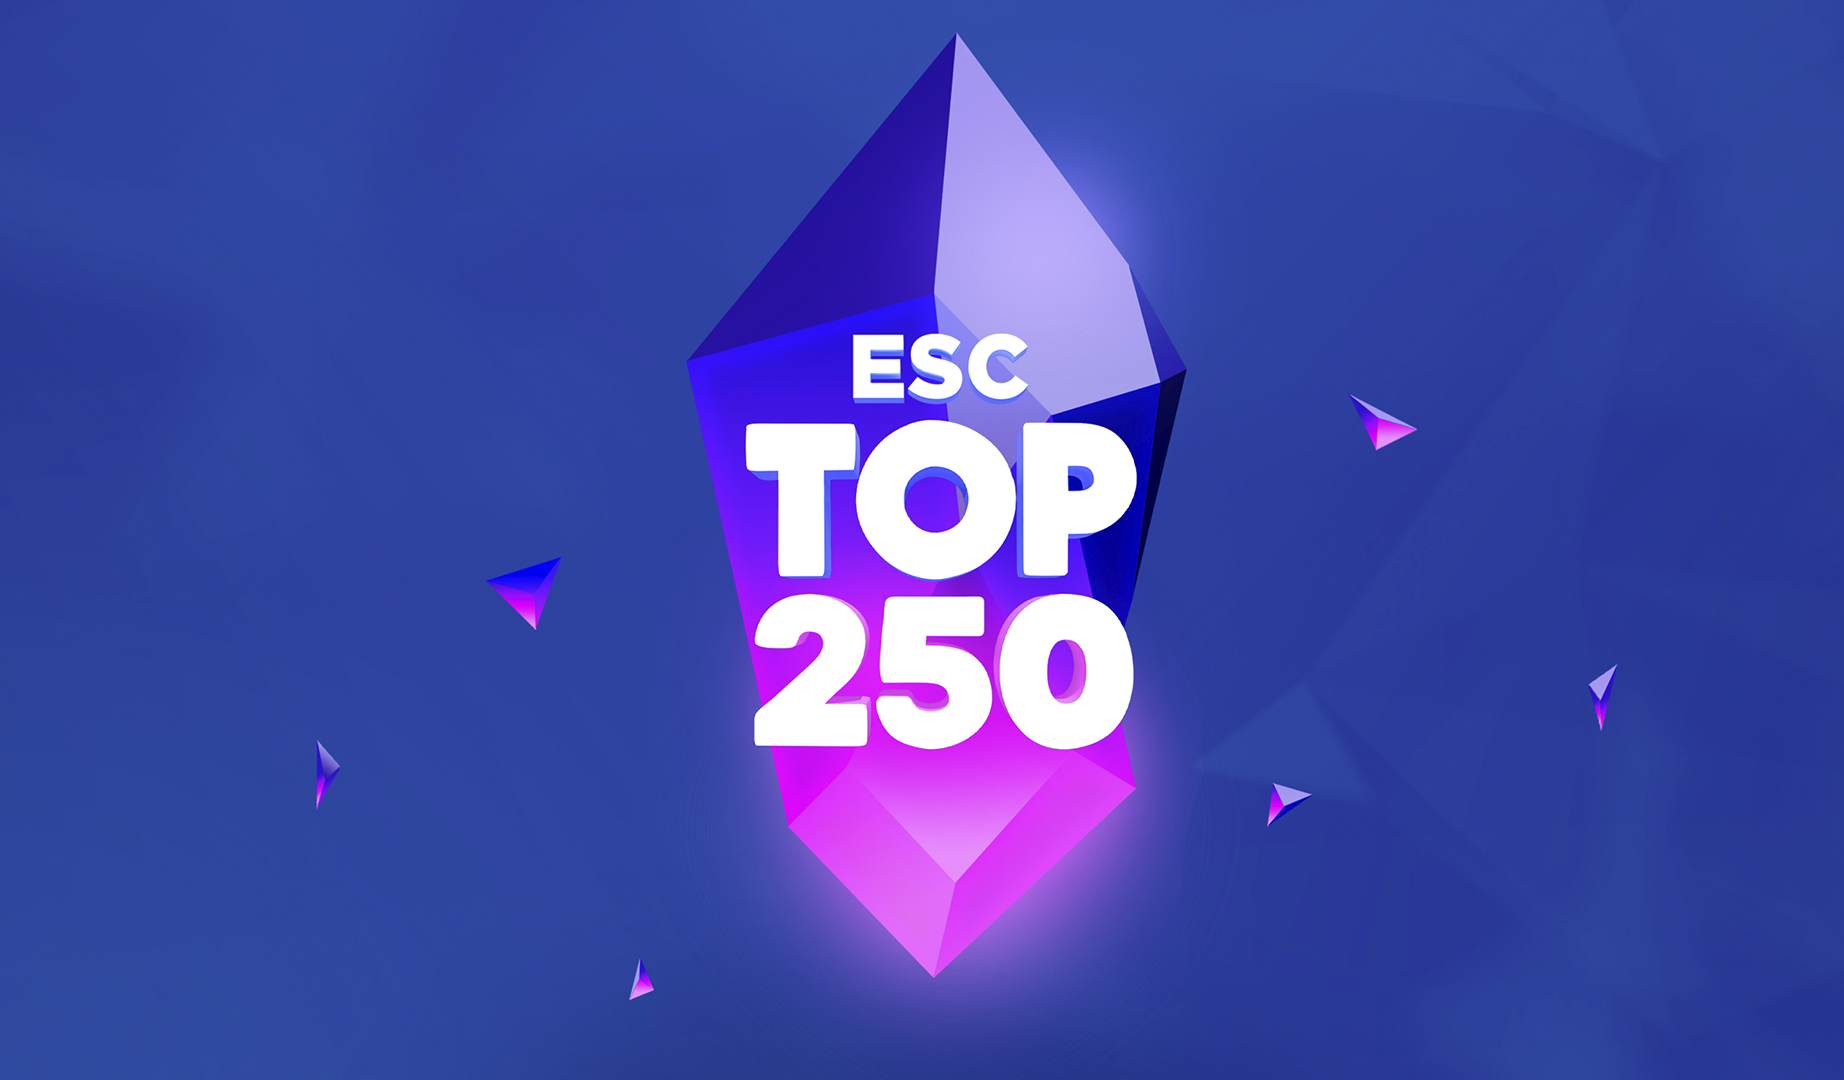 Arranca la búsqueda de la mejor canción Eurovisiva en el ESC TOP 250